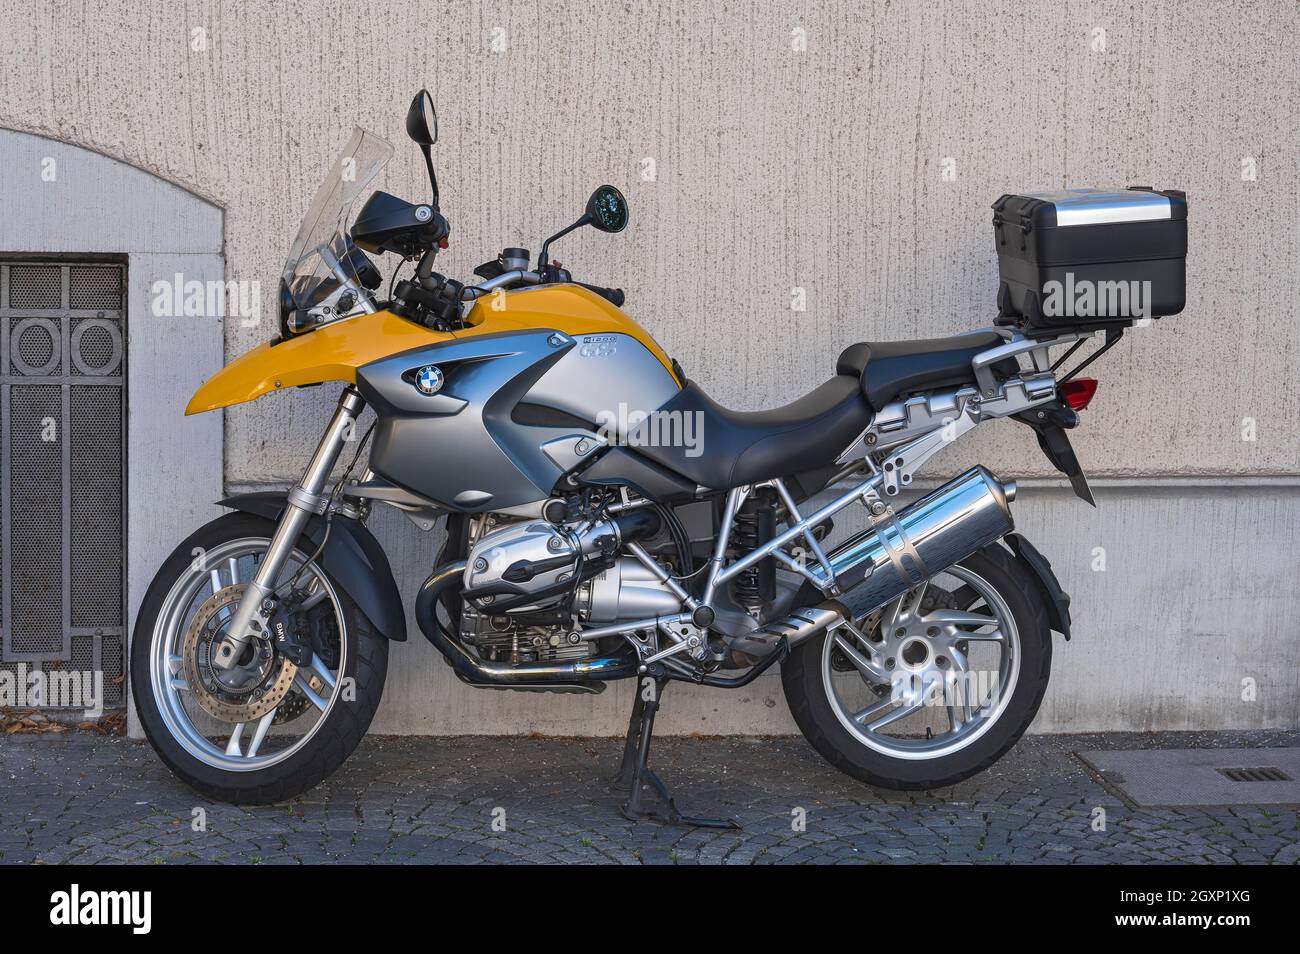 BMW Motorrad, R 1200 GS, München, Oberbayern, Bayern, Deutschland  Stockfotografie - Alamy